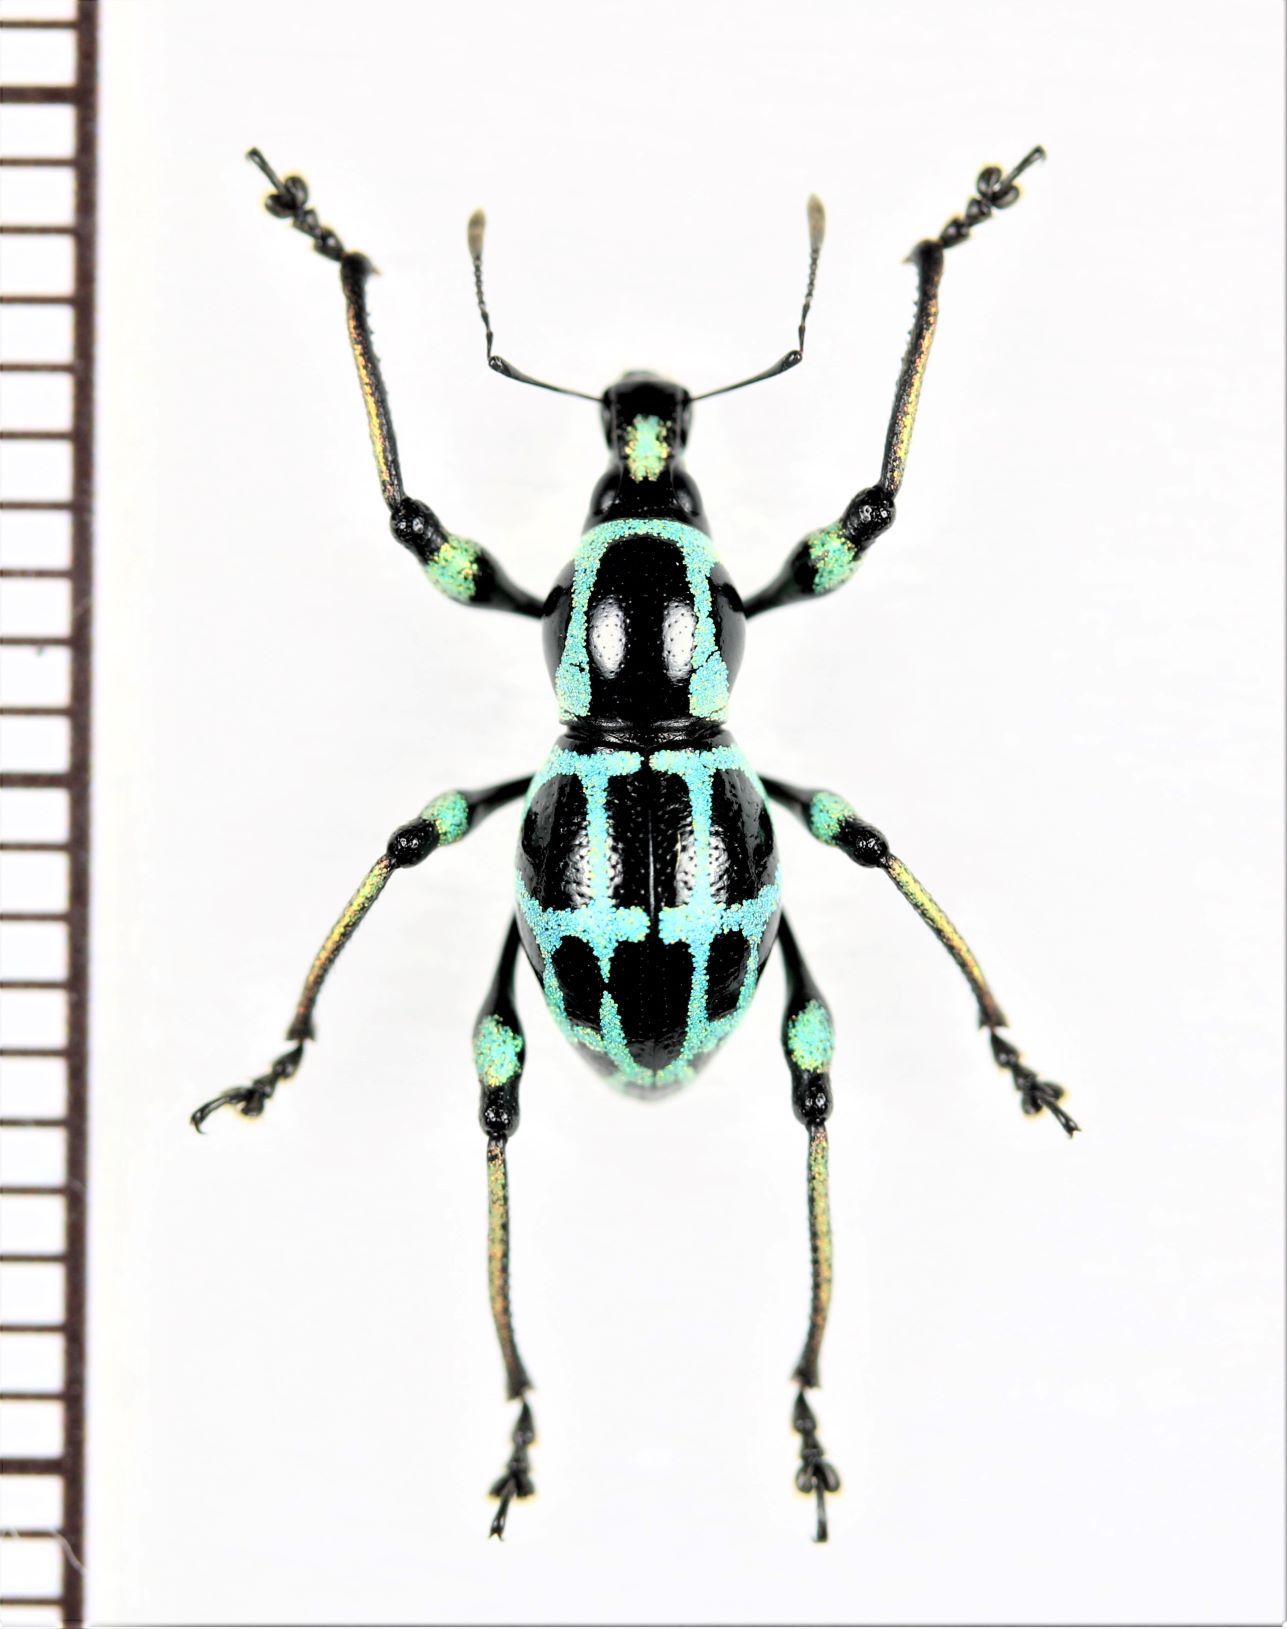 カタゾウムシの一種 Macrocyrtus sp. フィリピン(ルソン島) - Insect 